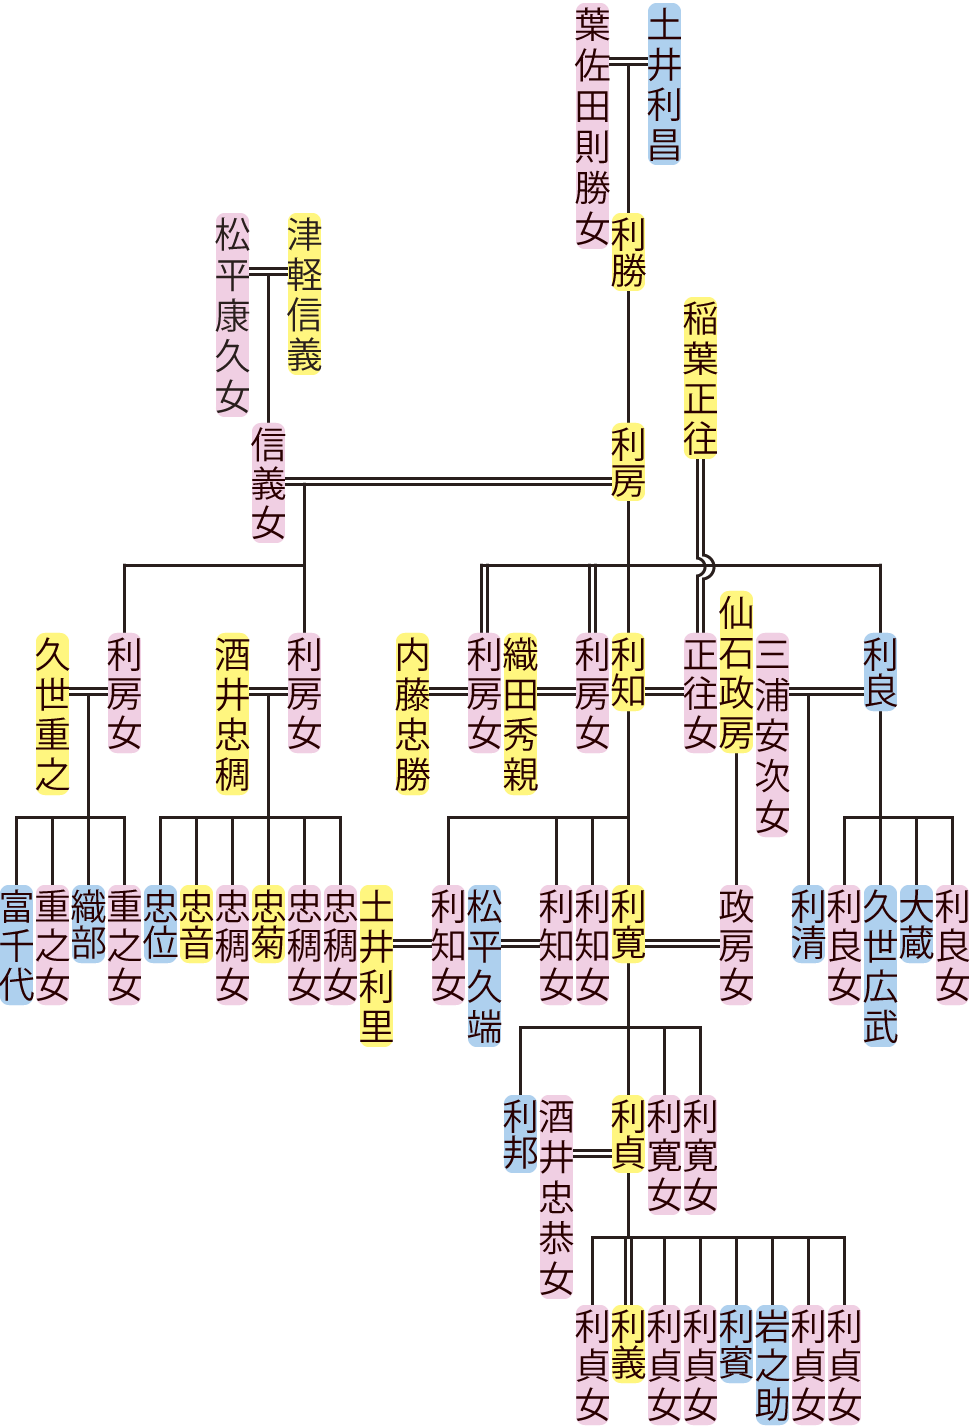 土井利房～利寛の系図